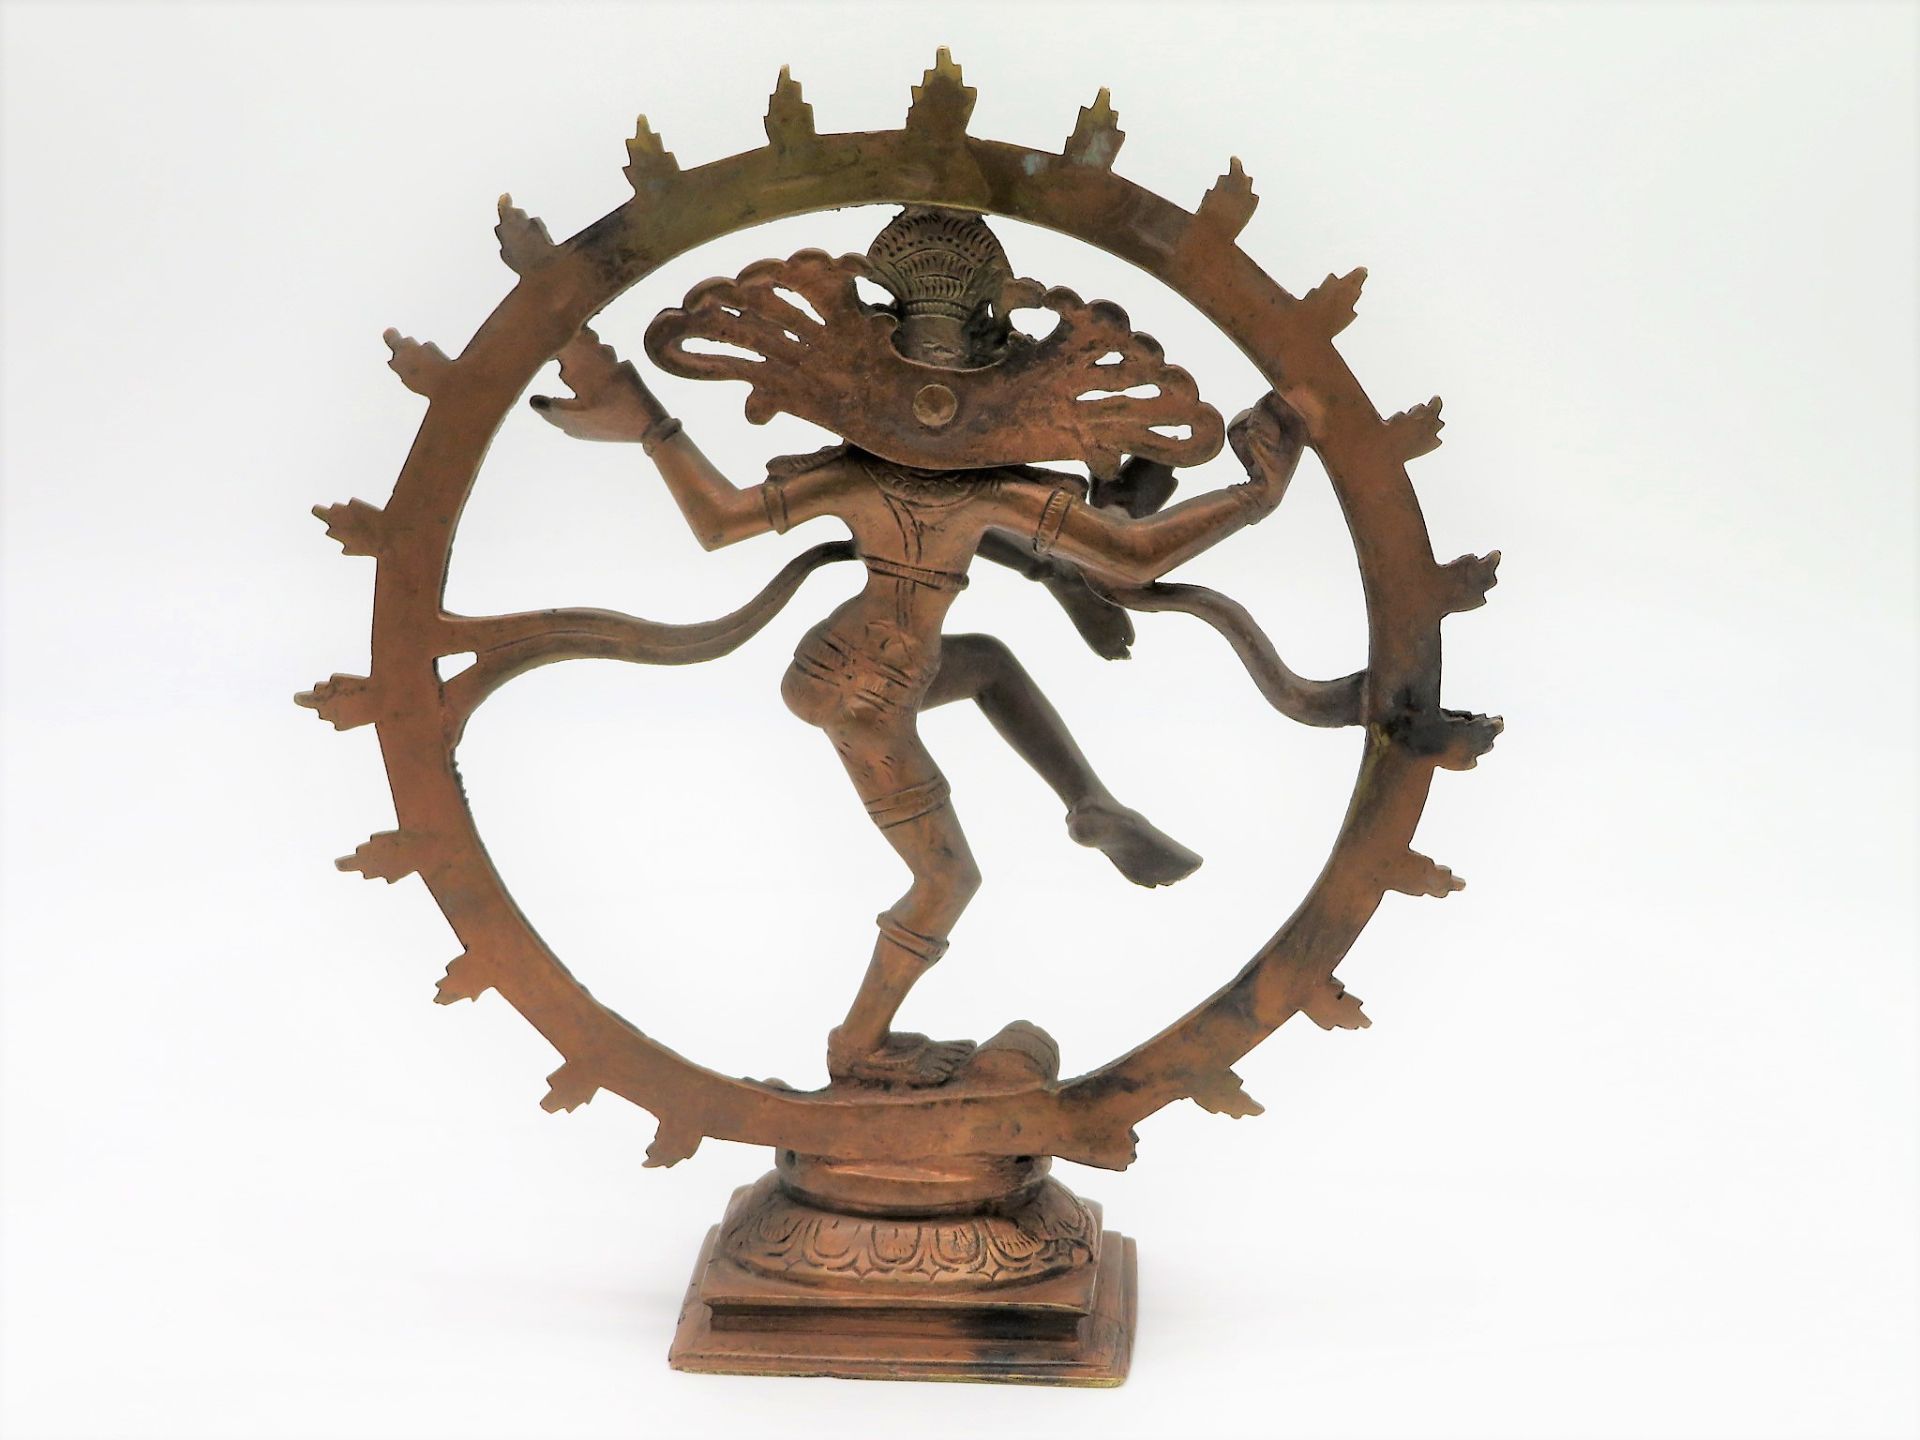 Tanzender Shiva Nataraja im Feuerkreis, wohl Indien/Nepal, Bronze, 23 x 20 x 7 cm. - Bild 2 aus 2